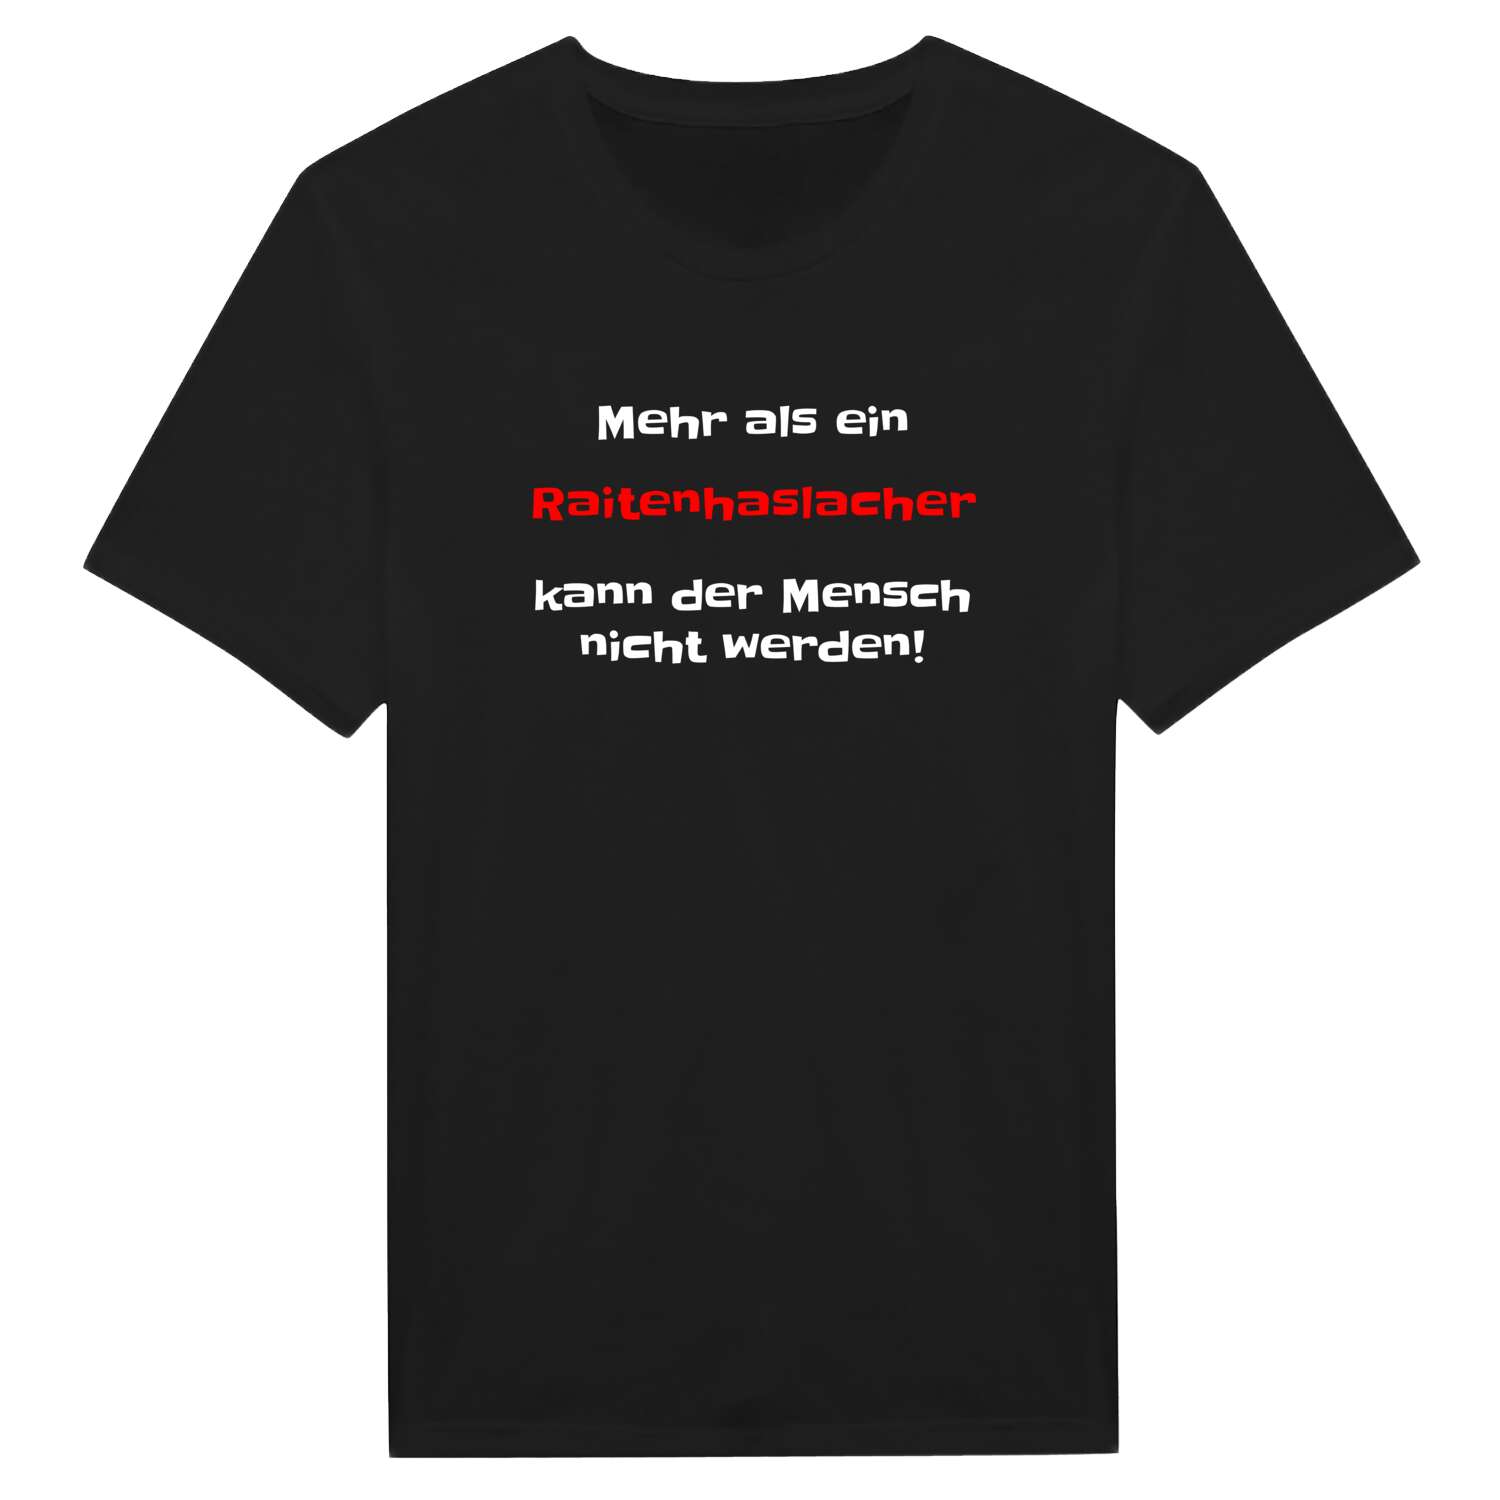 Raitenhaslach T-Shirt »Mehr als ein«